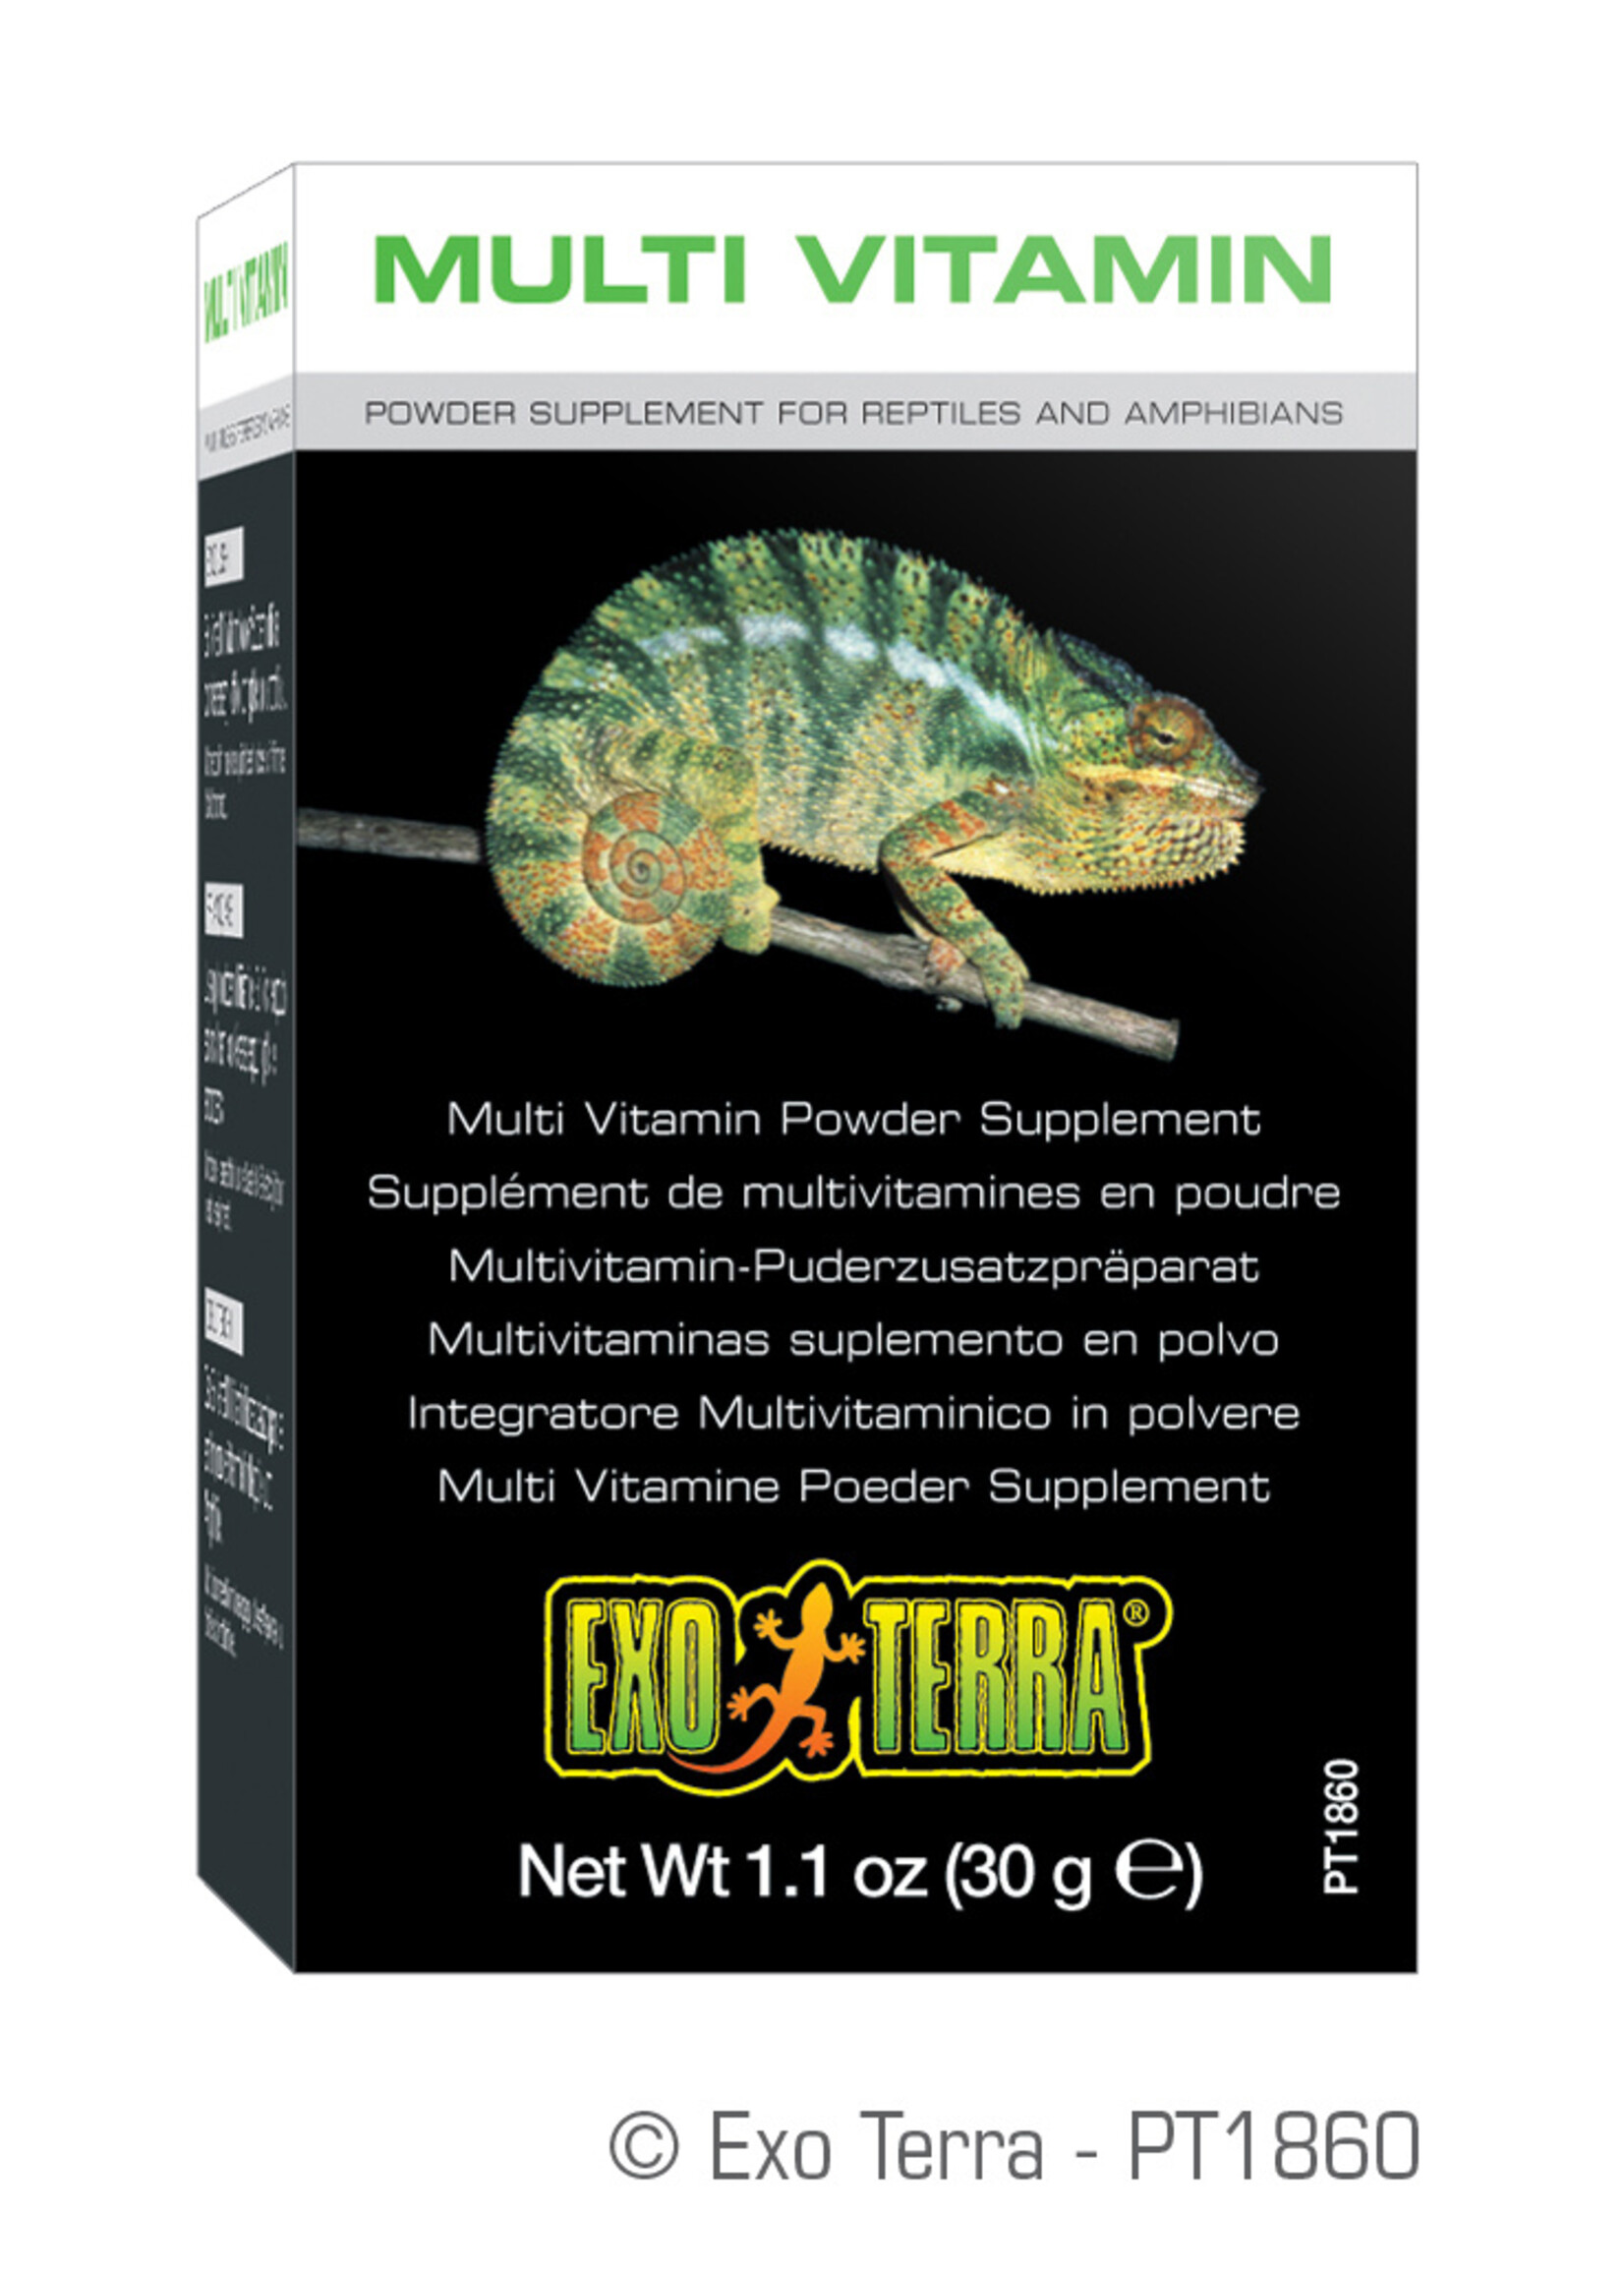 Exo Terra® Exo Terra® Multi Vitamin Powder Supplement 30g